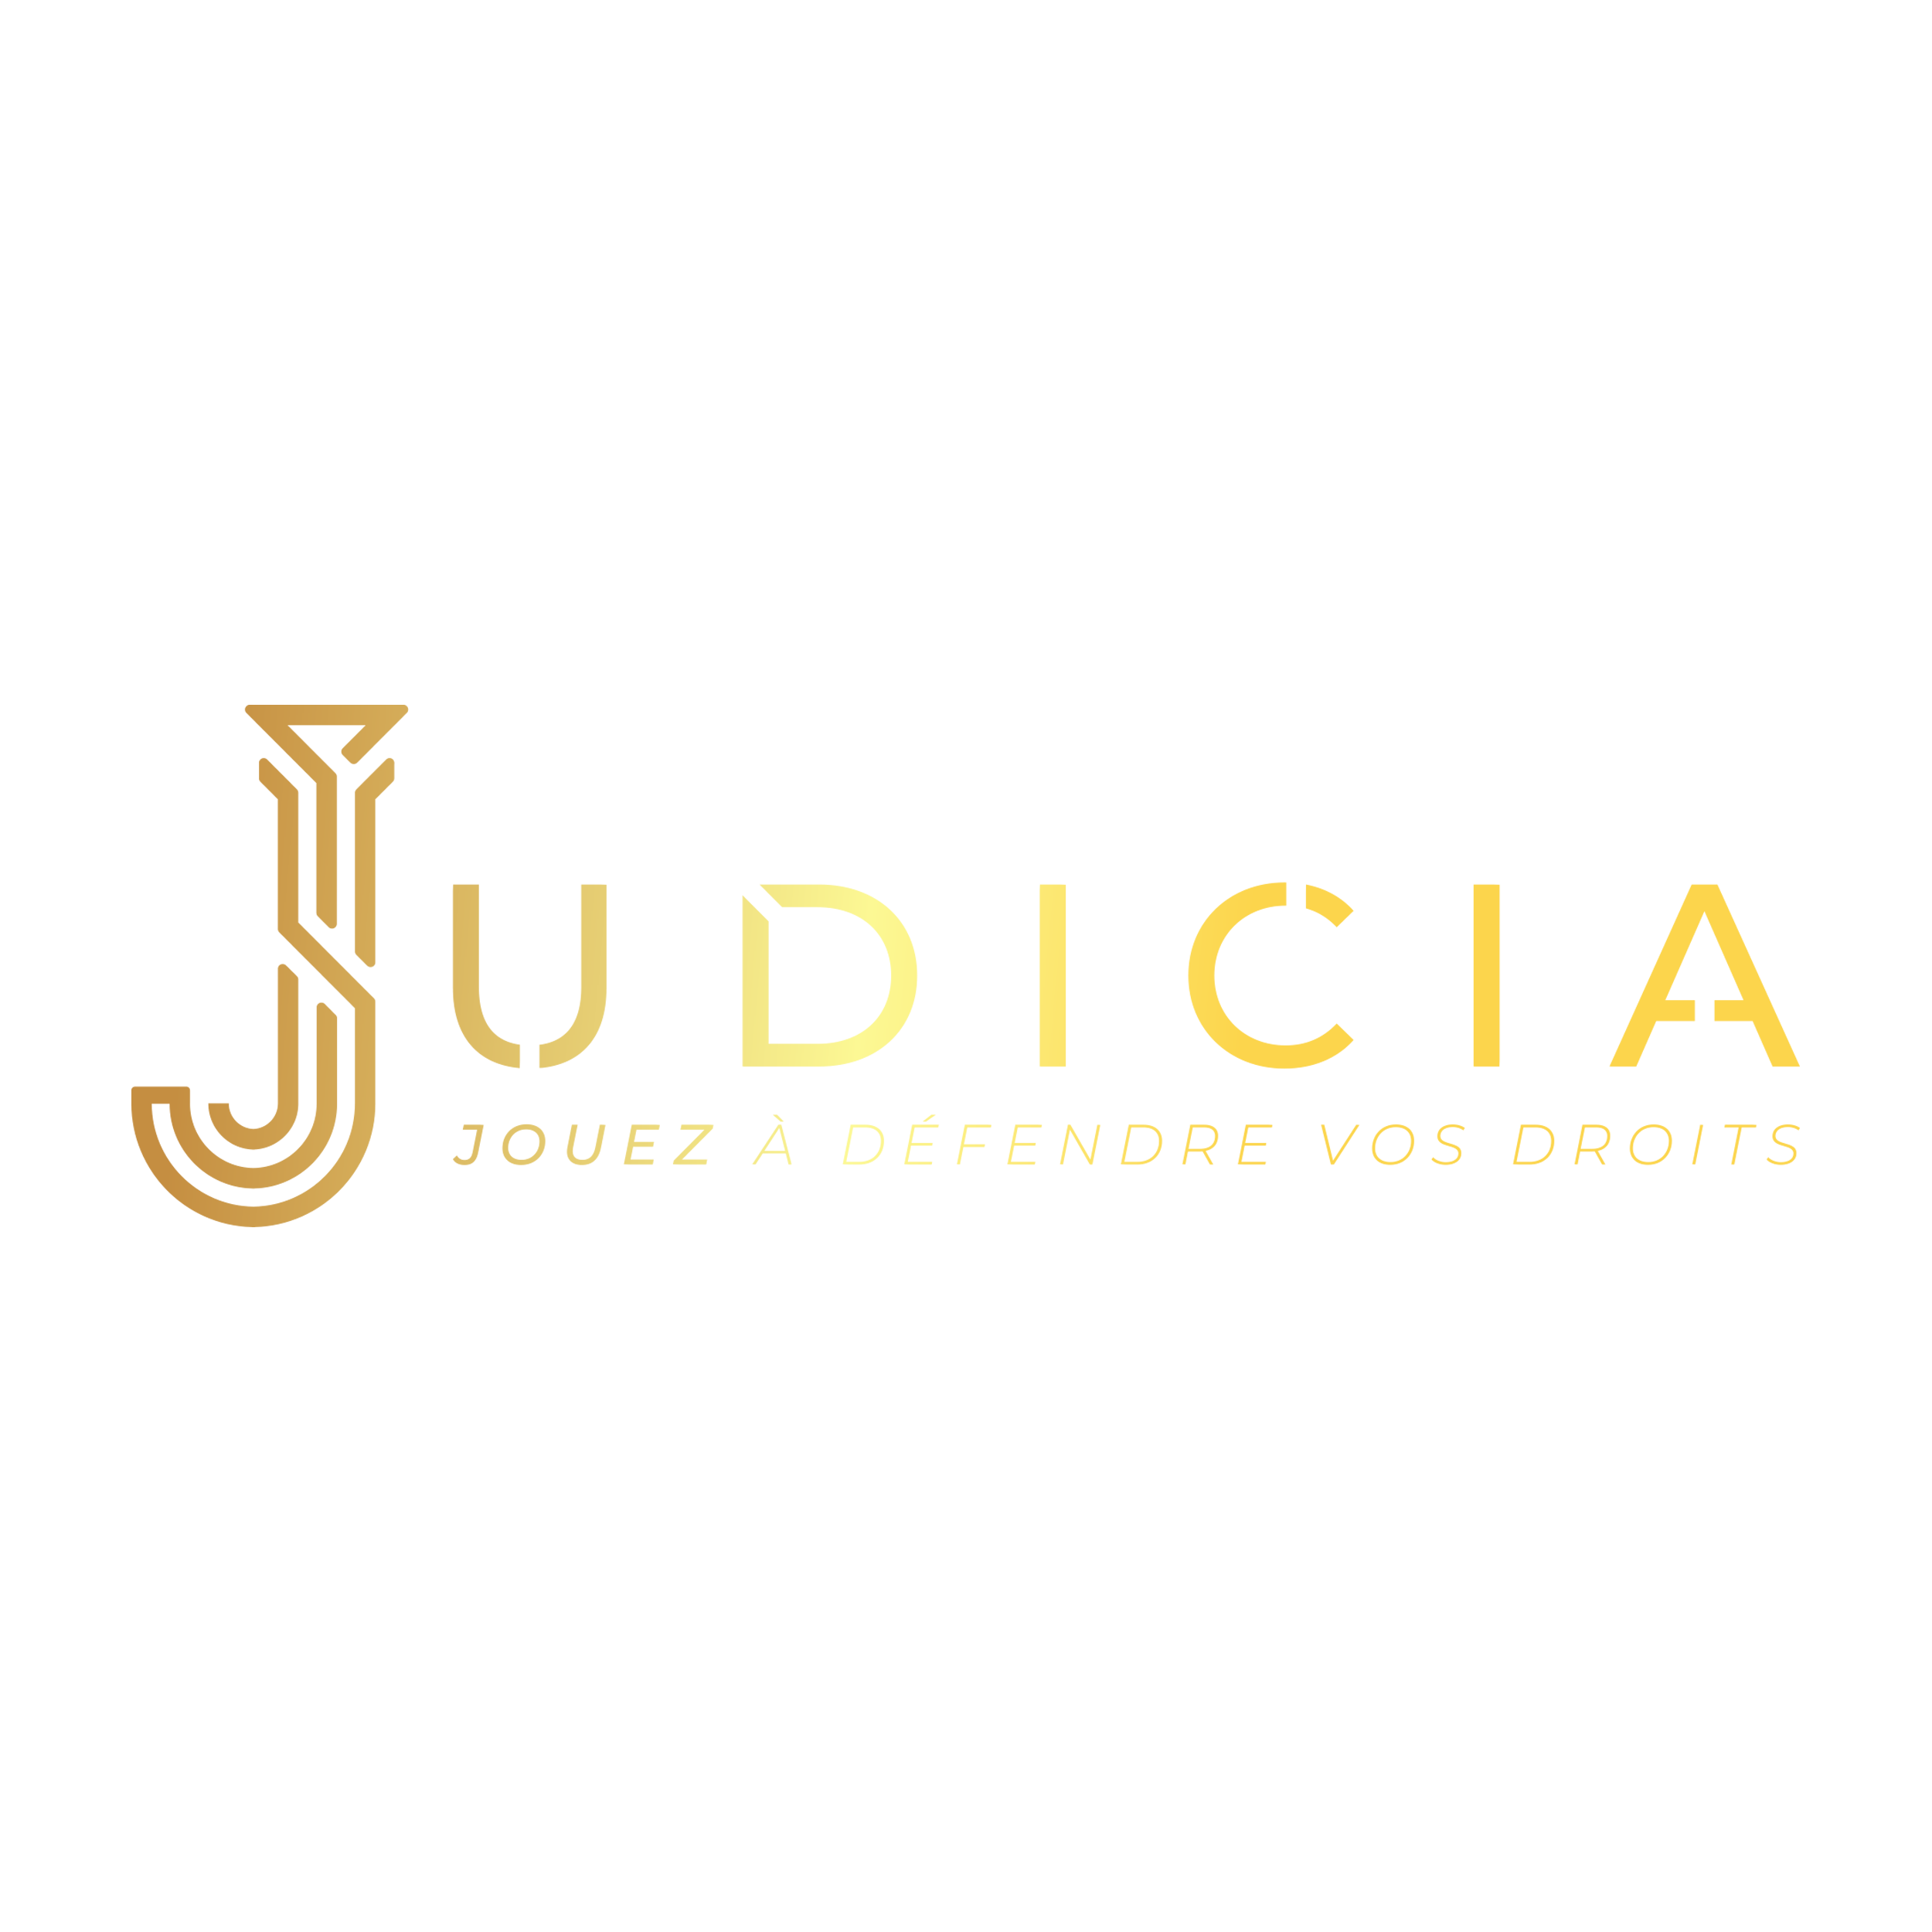 Judicia (by Vialudo)